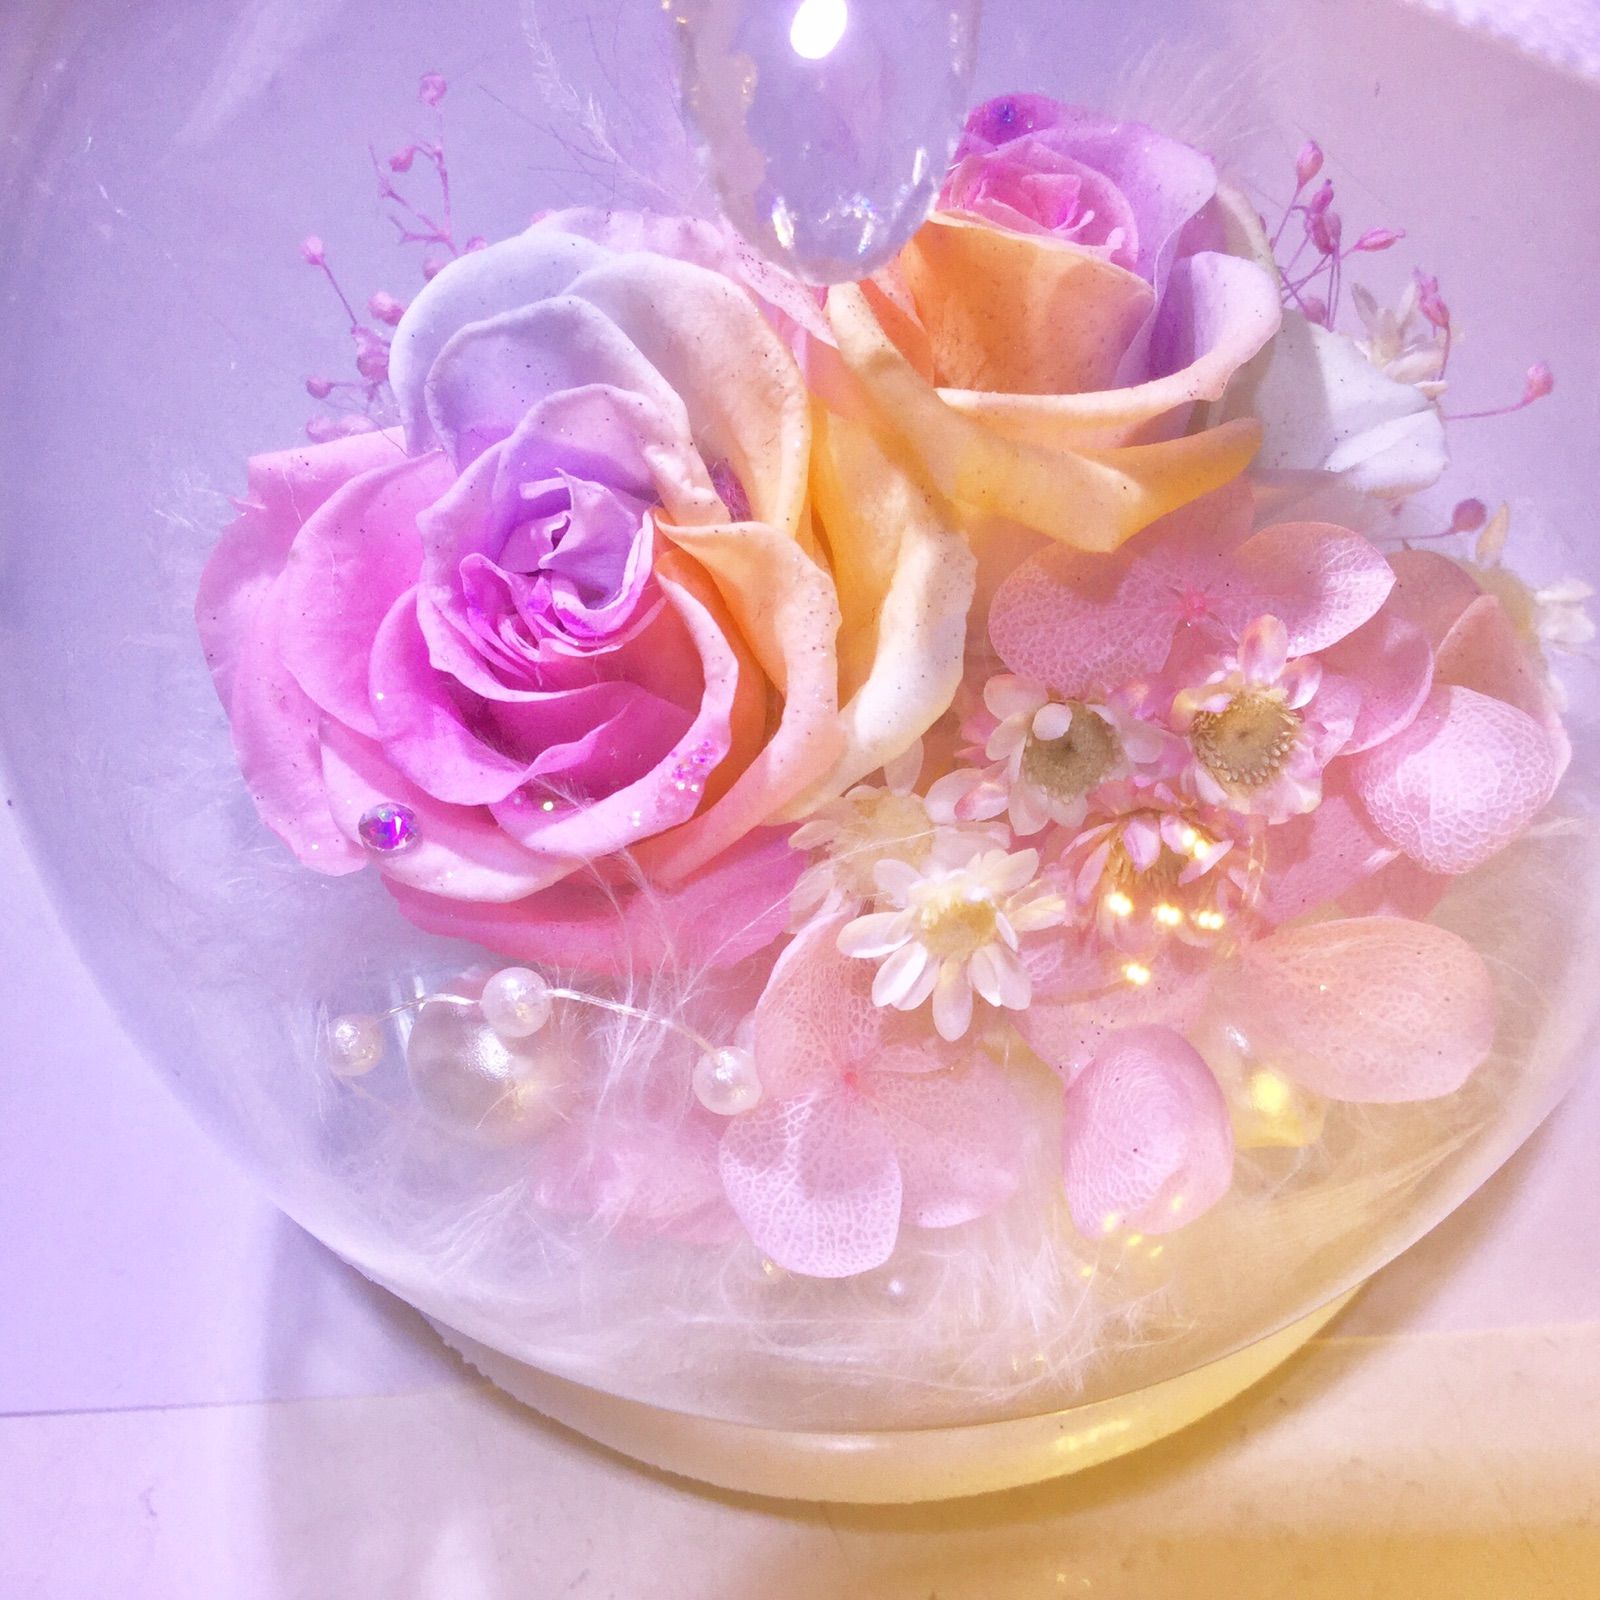 枯れない希望の花・パステルレインボーローズプリザーブドフラワー・真珠の涙mini